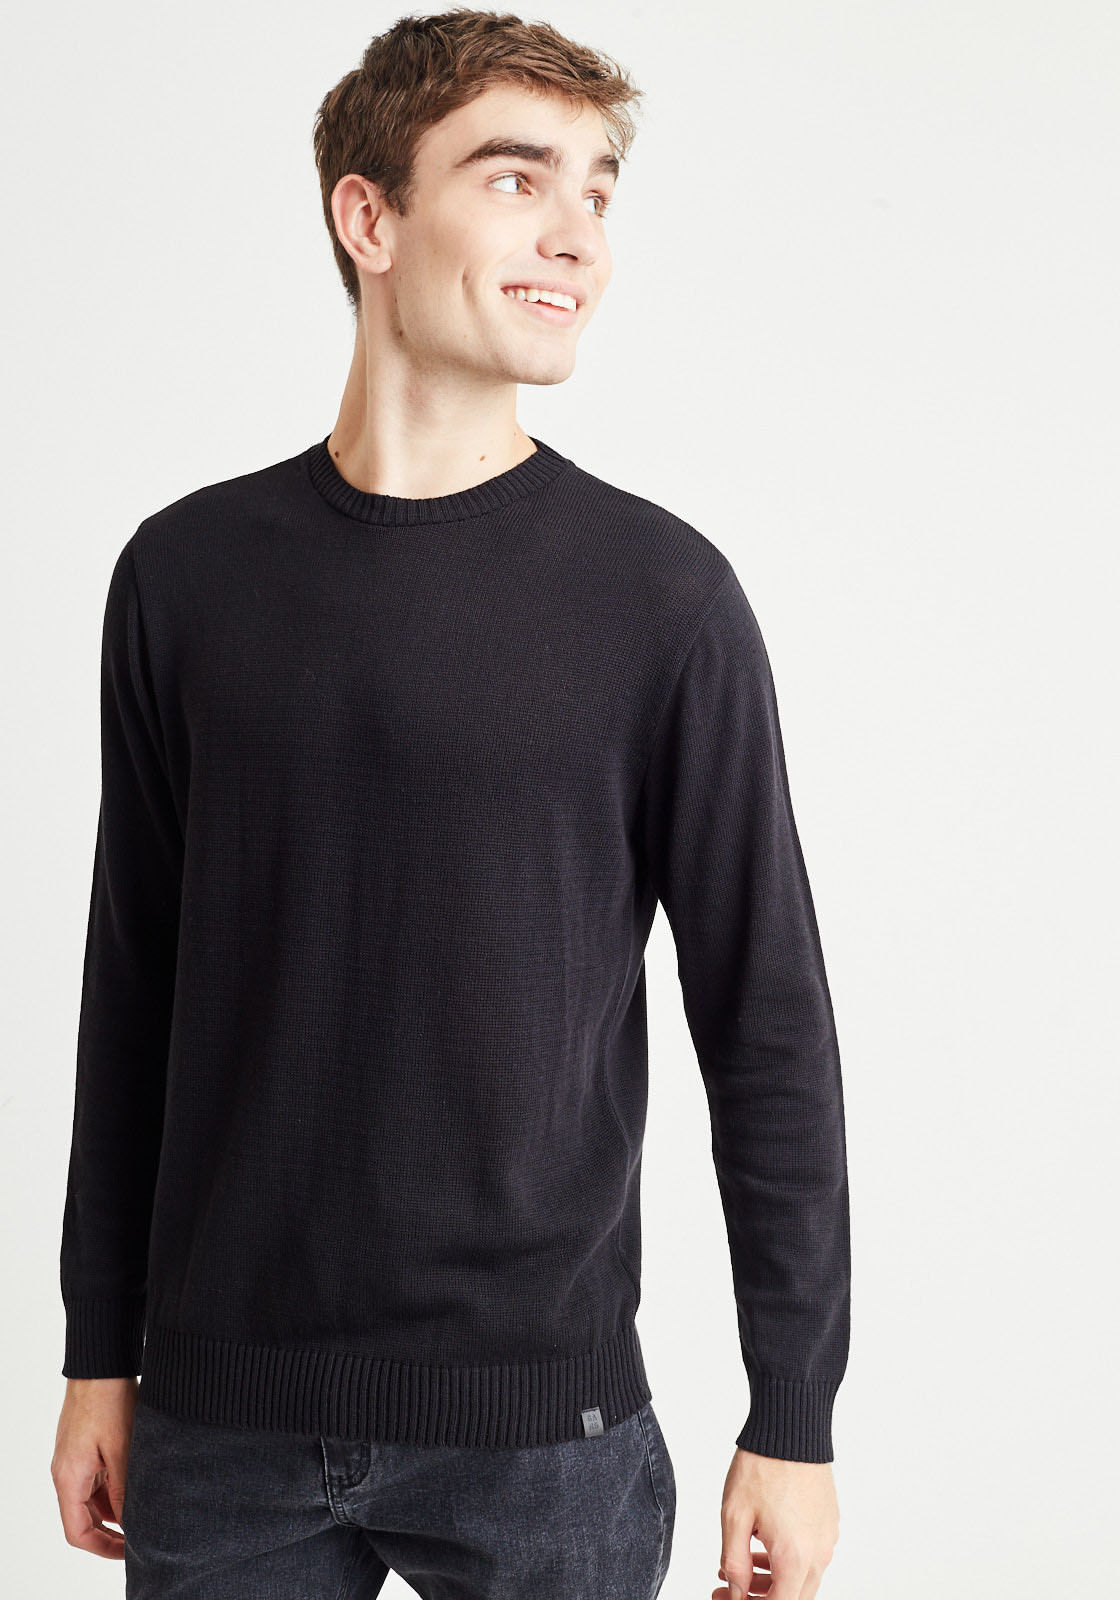 homem veste blusão de tricot preto com gola redonda e calça jeans de lavagem escura